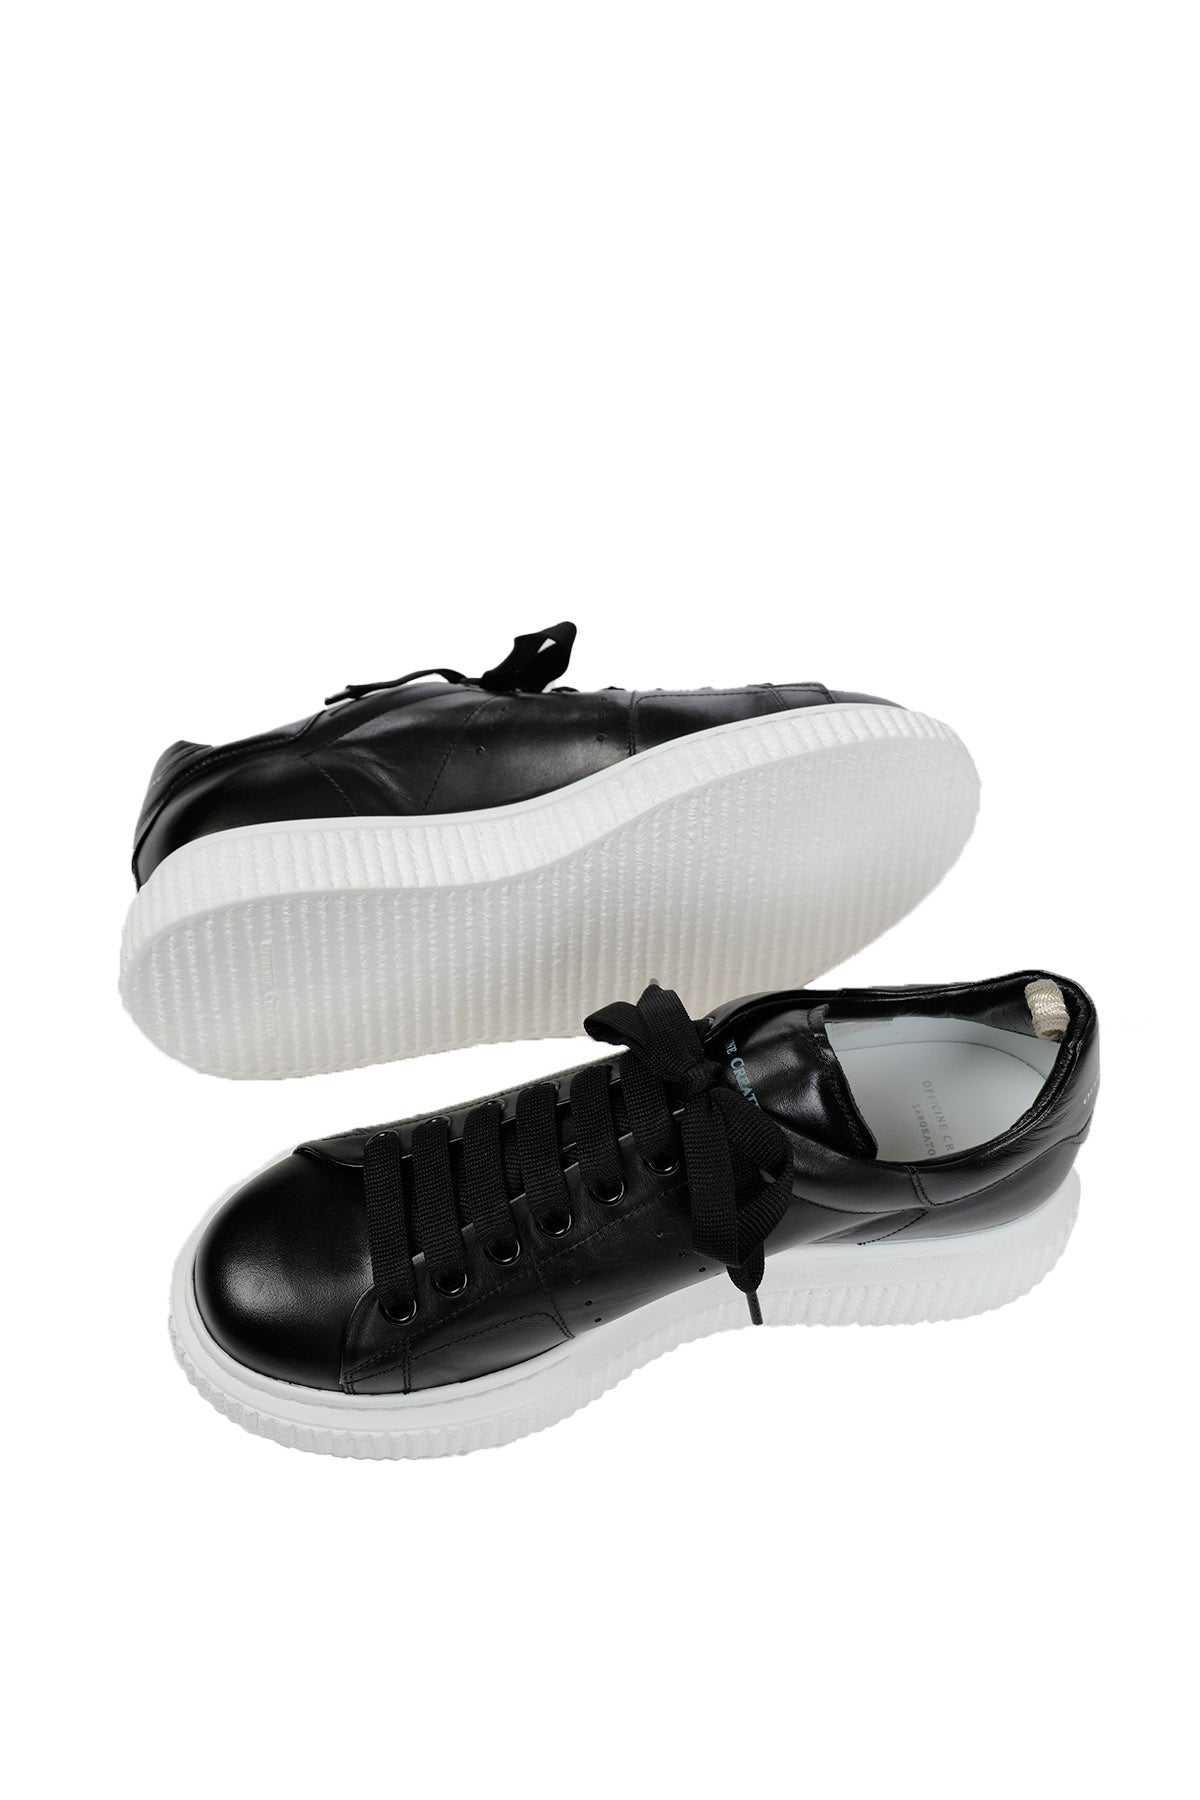 Officine Creative Krace Sneaker Ayakkabı-Libas Trendy Fashion Store